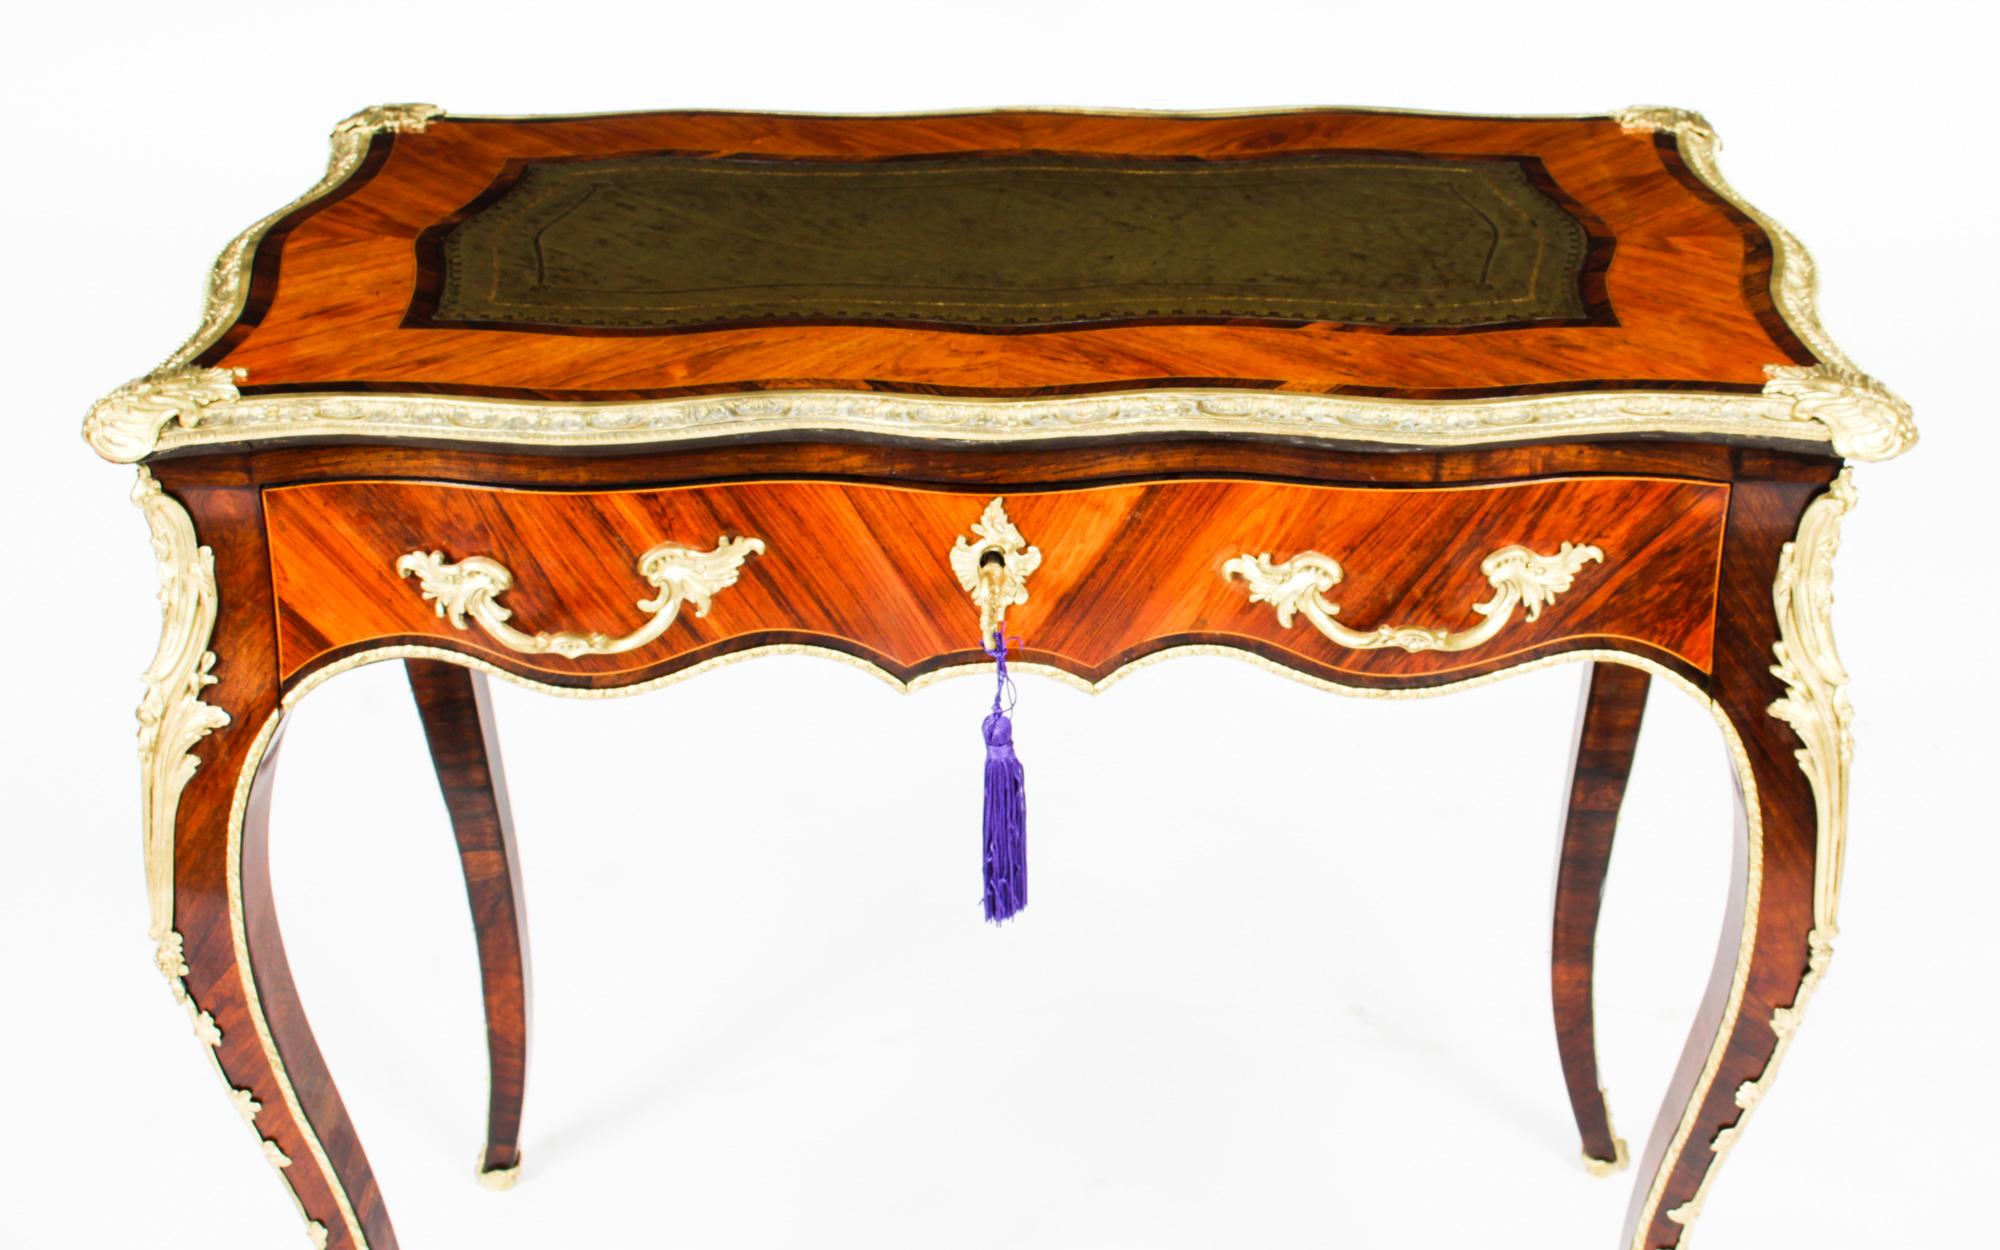 Dies ist eine feine und schöne petite Französisch Louis XV Revival goncalo Alves und Ormolu montiert bureau plat, um 1850 in Datum.
Diese phantastische Kommode verfügt über eine verschnörkelte, quer verlaufende Platte, die mit einer Schreibfläche